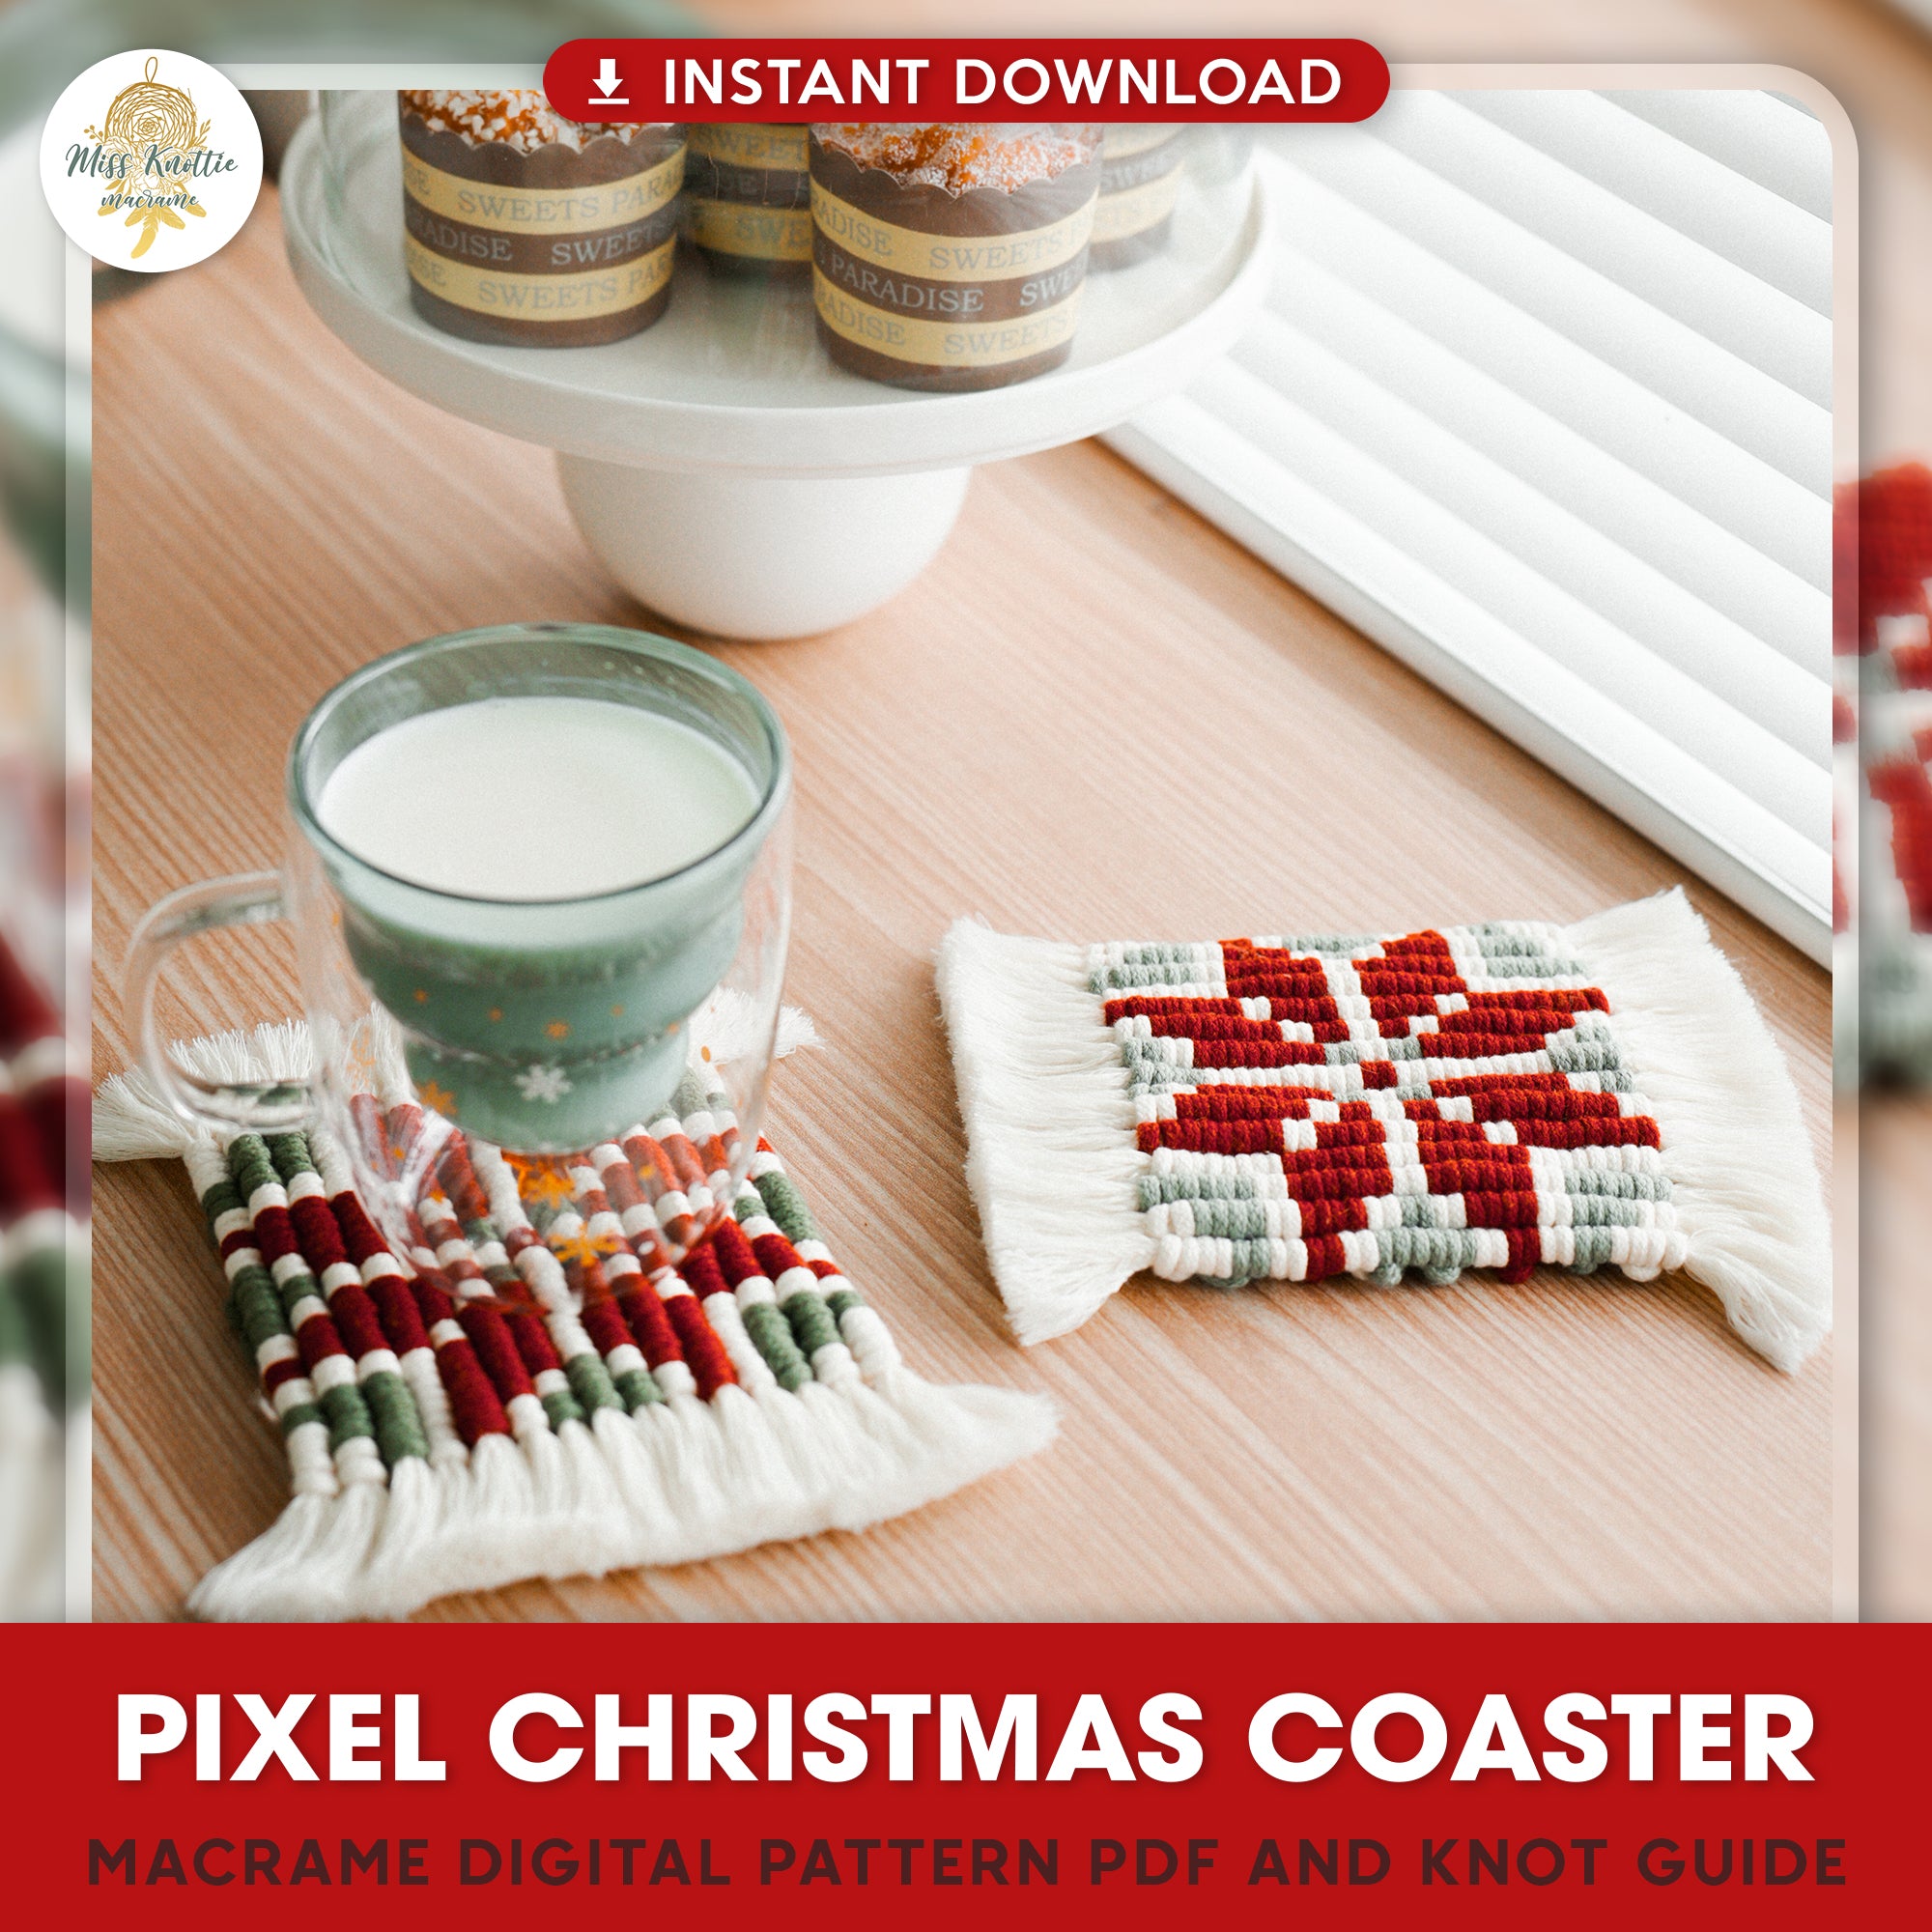 Pixel-Weihnachtscoaster-Muster-Digitale PDF-und Knauf anleitung